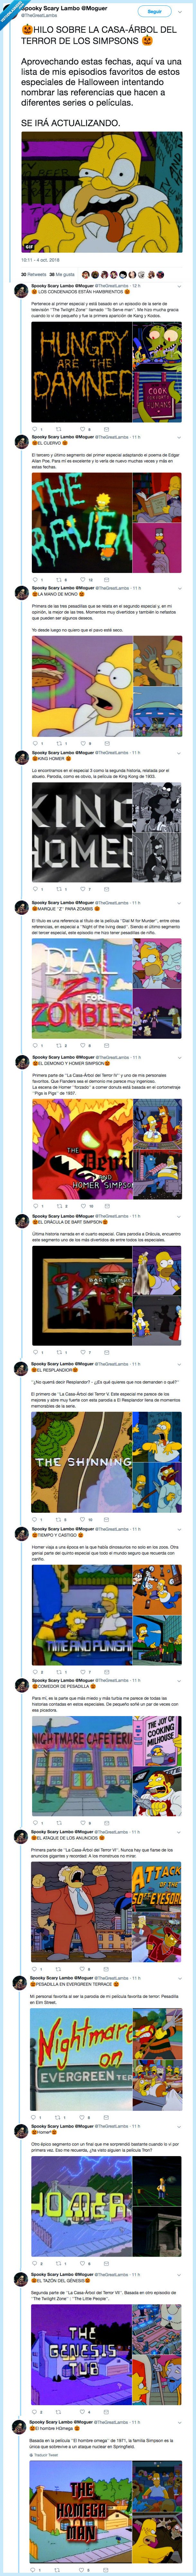 498622 - La casa-árbol del terror de los Simpsons son una auténtica oda al mejor cine de terror de todos los tiempos, por @TheGreatLambs